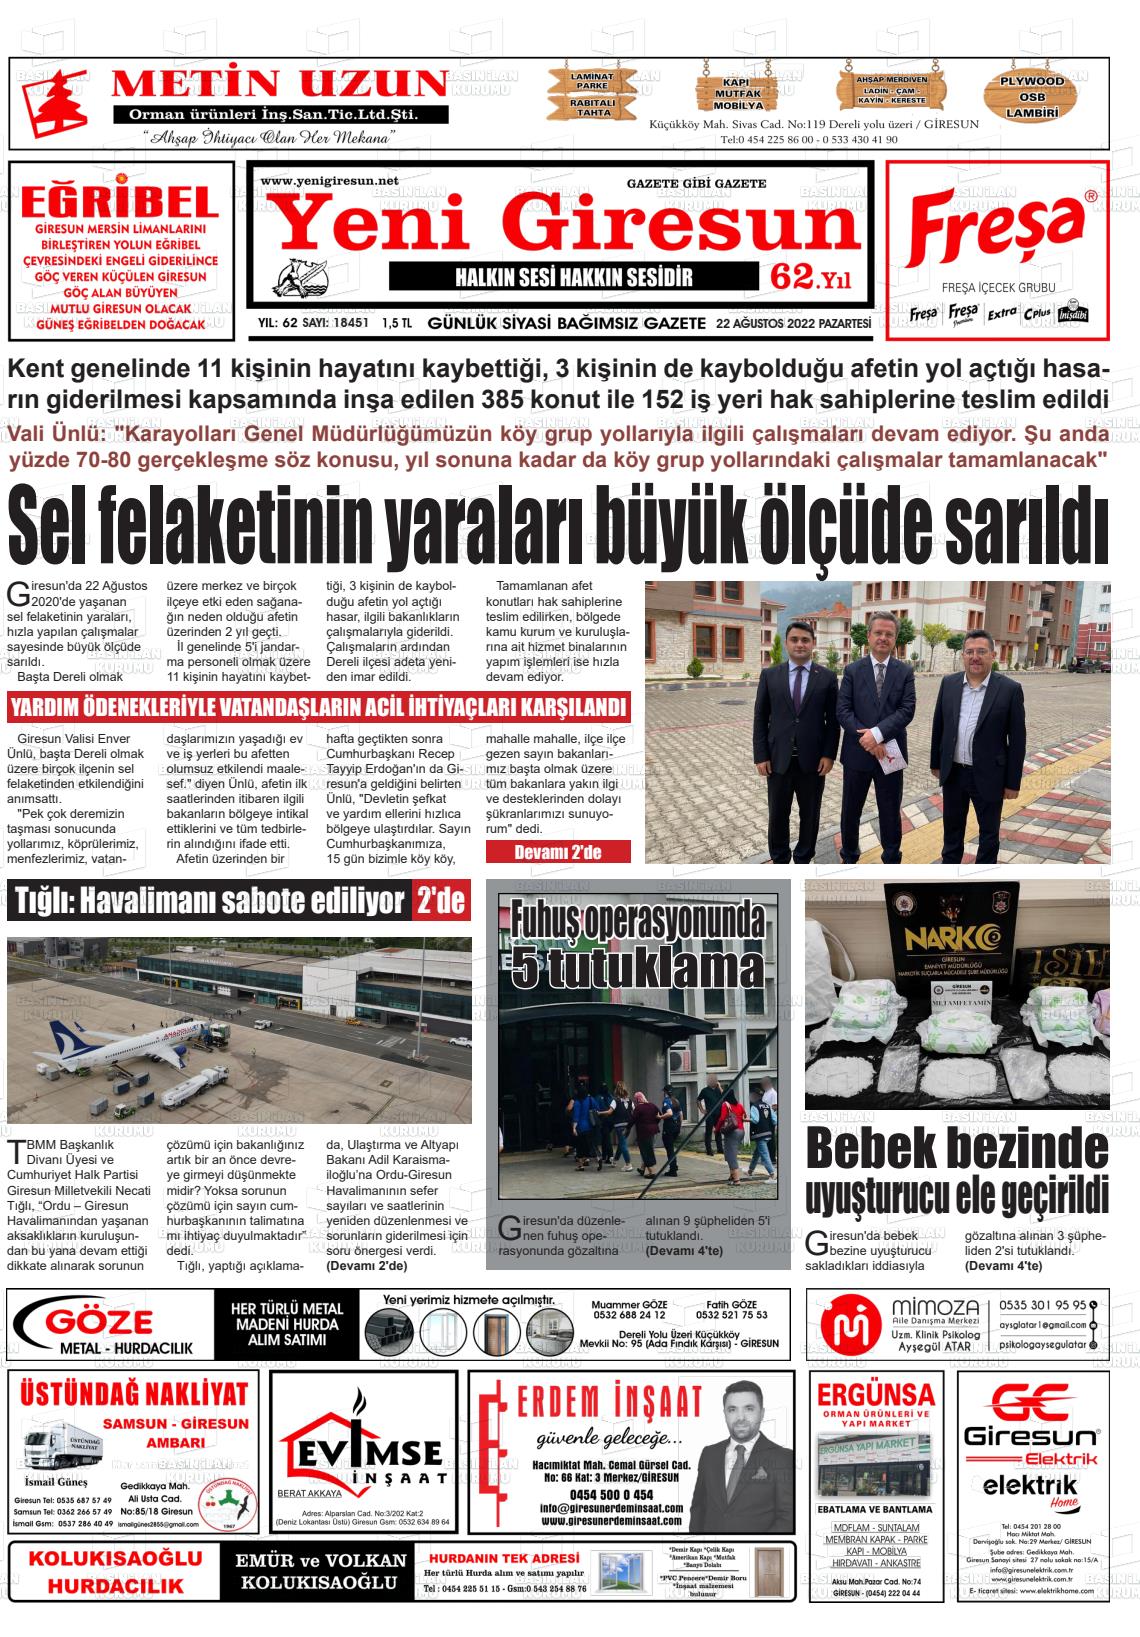 22 Ağustos 2022 Yeni Giresun Gazete Manşeti